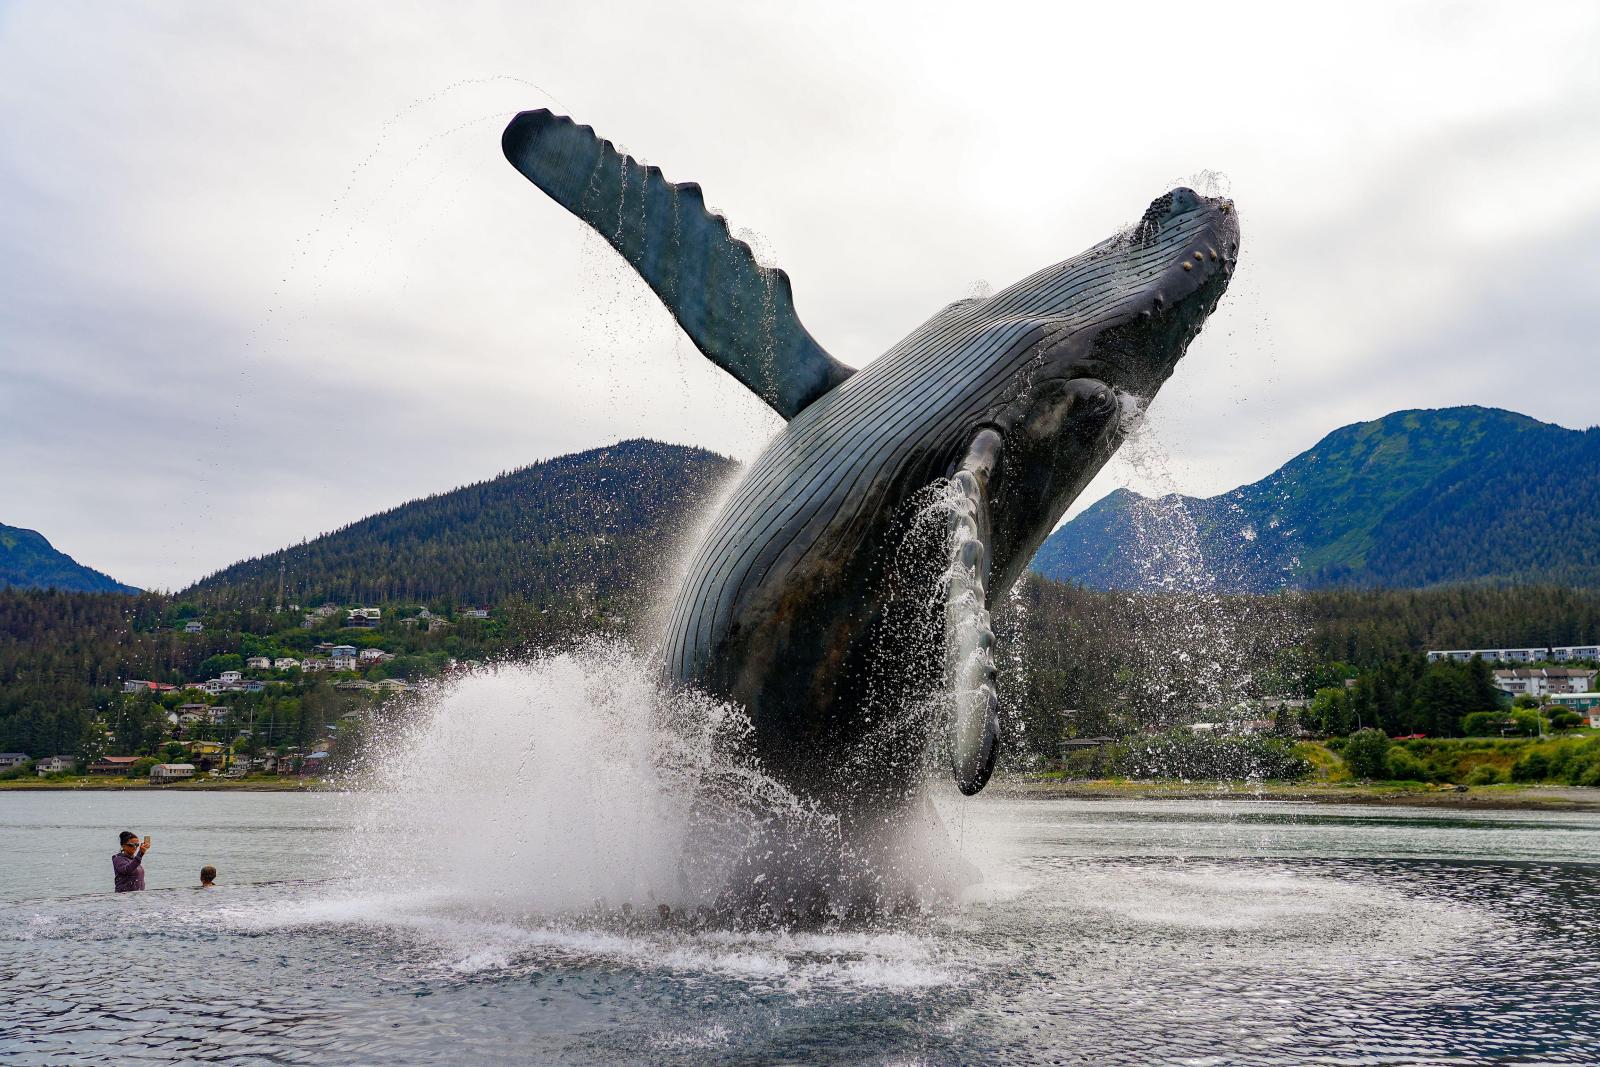 Камчатка, Сахалин и не только: где можно увидеть китов в России - image 4